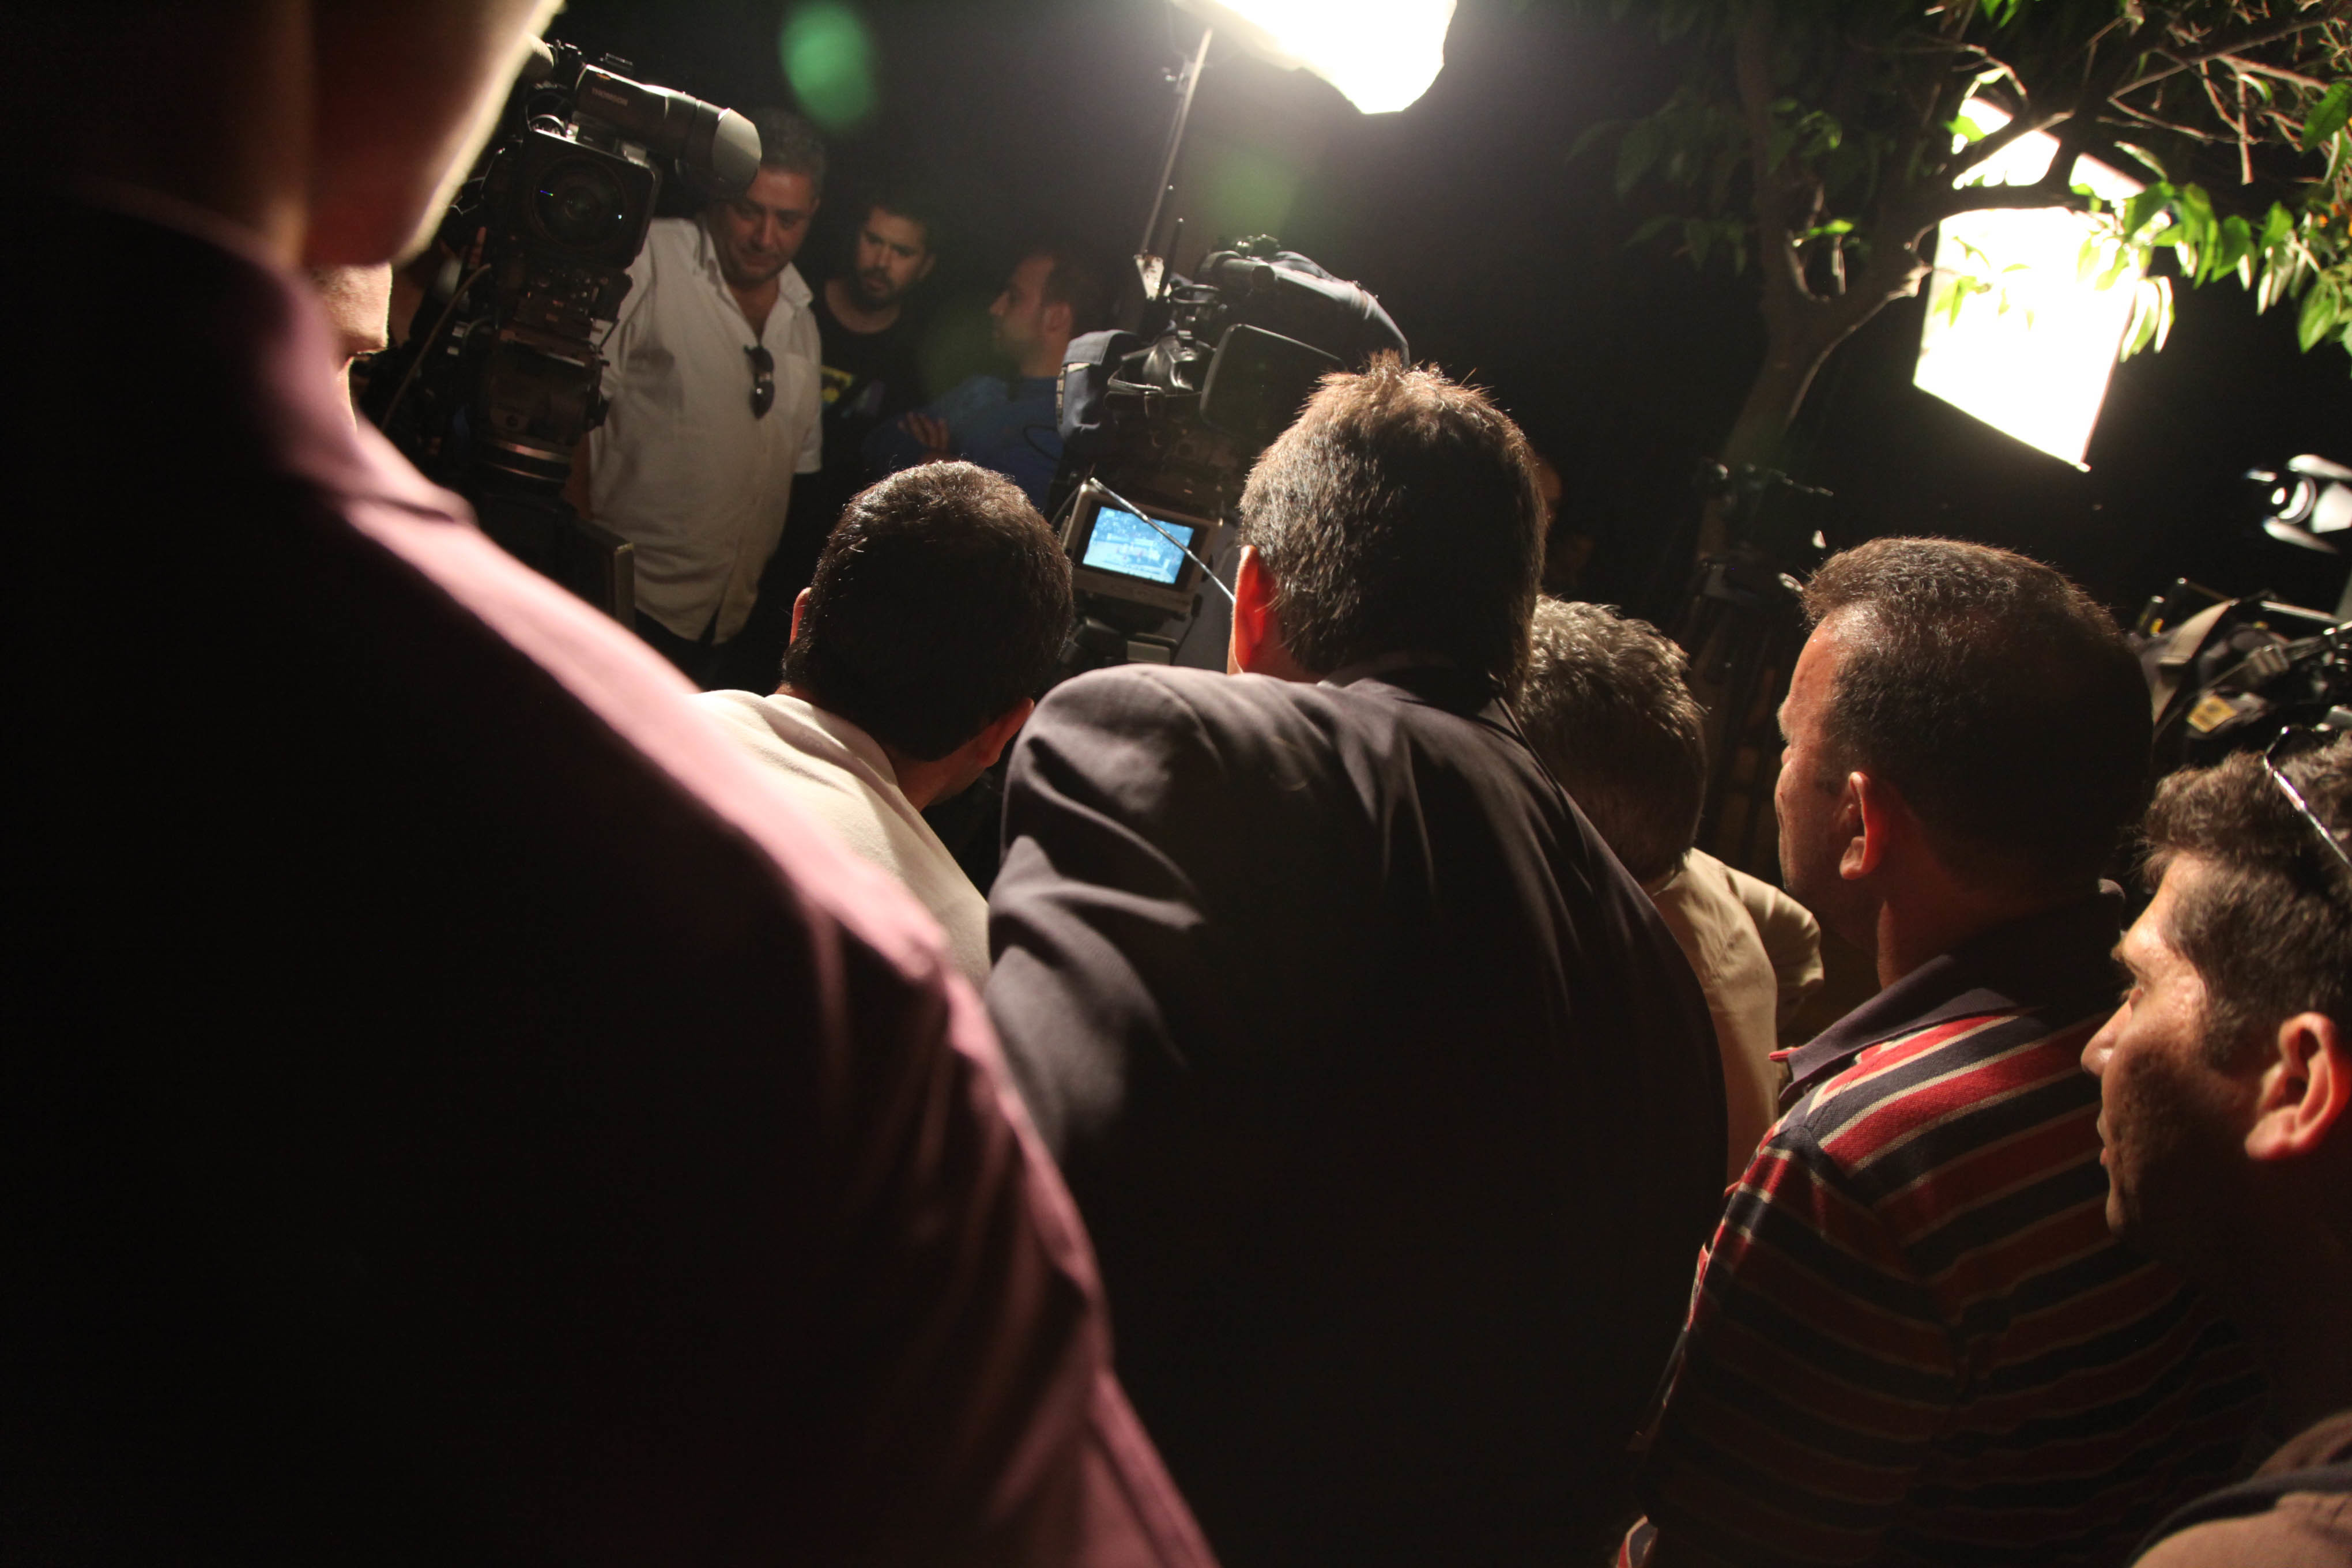 Τι έβλεπαν οι δημοσιογράφοι έξω από το Προεδρικό; (ΦΩΤΟ)